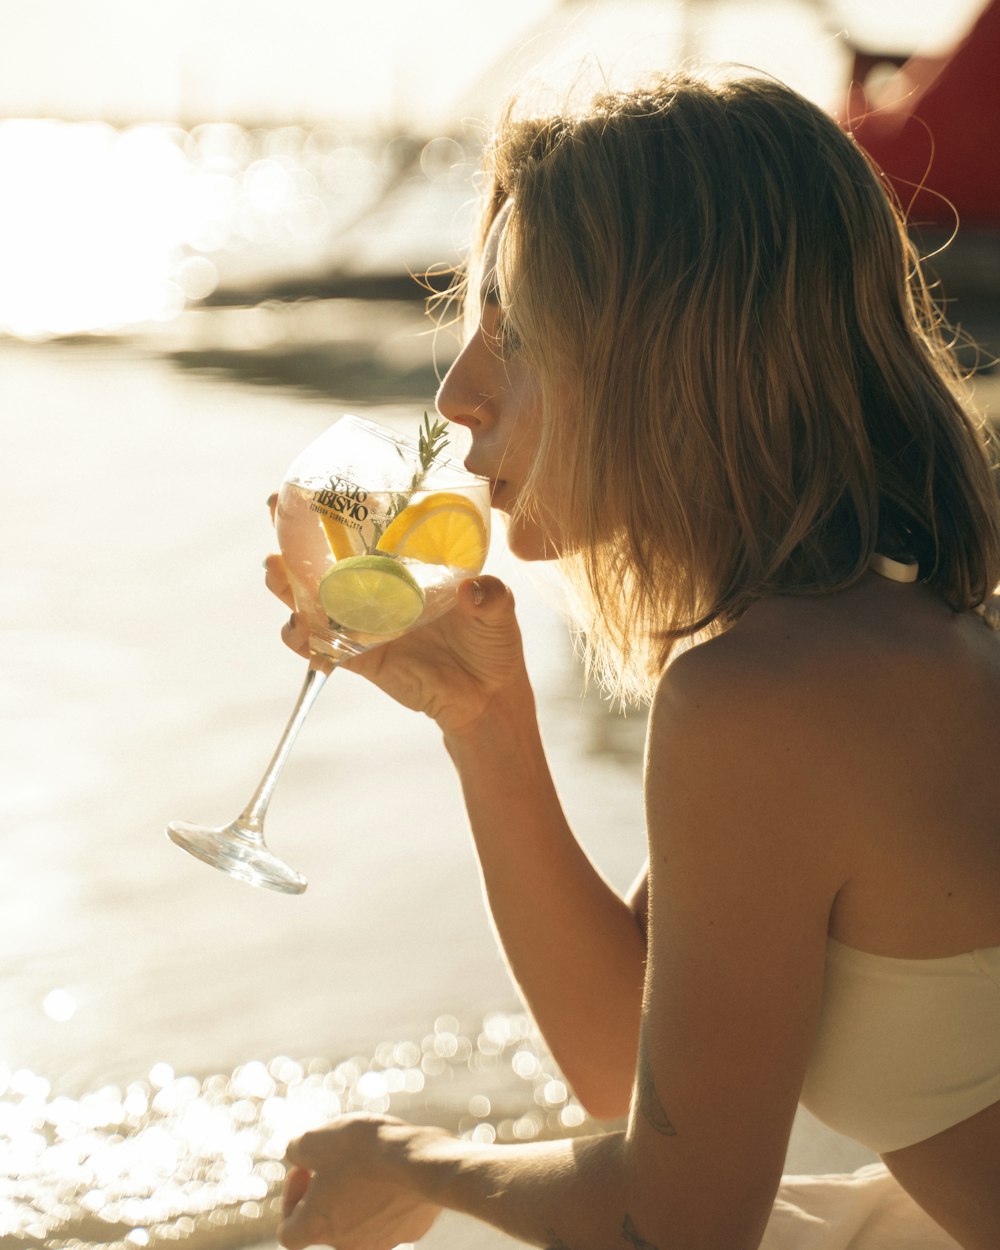 Une femme assise sur la plage buvant un verre de vin